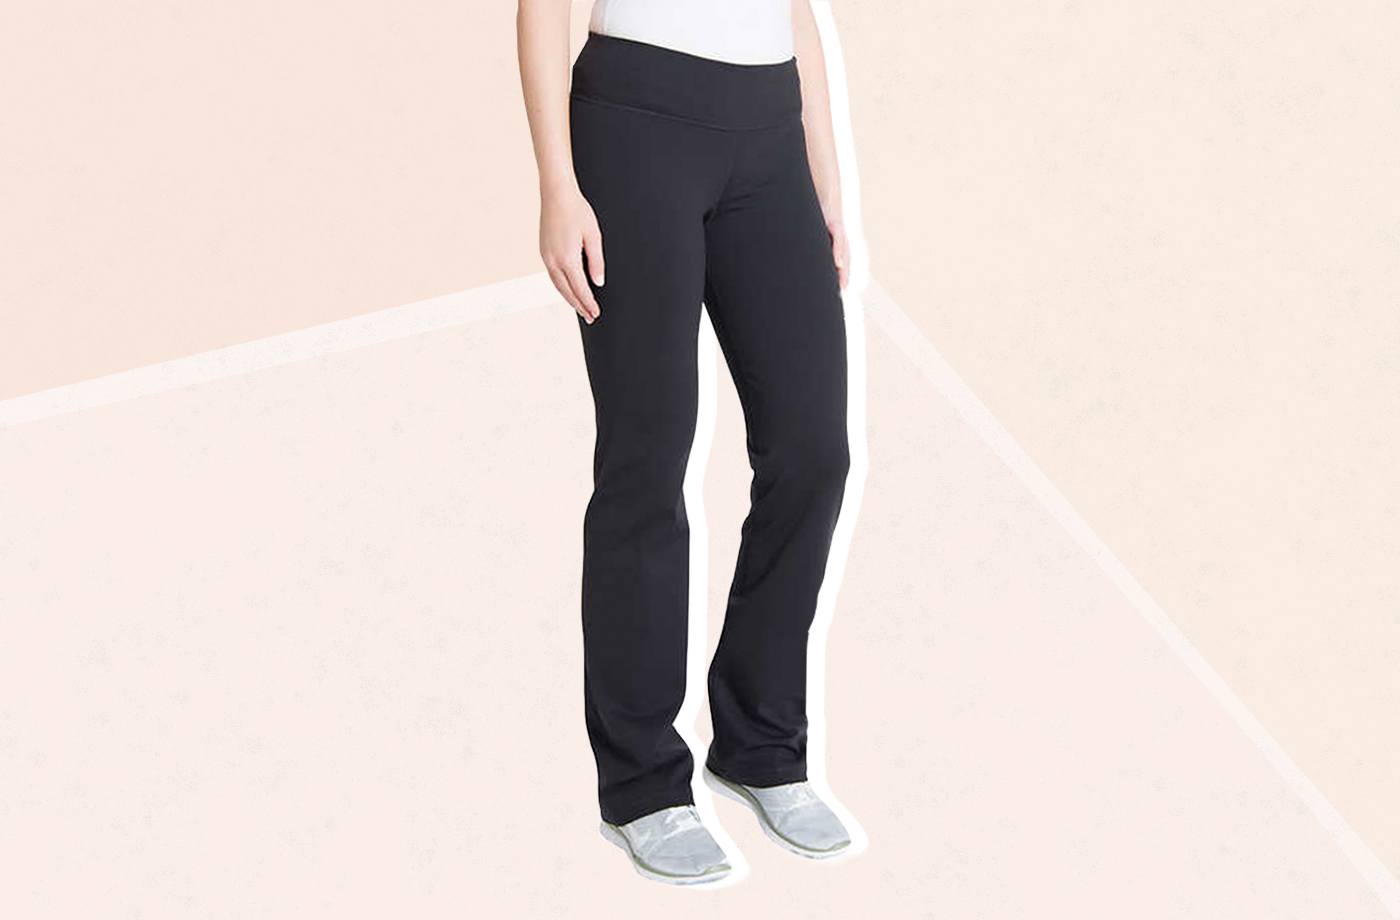 Costco $3 leggings just like $139 Lululemon pair: Queenie Tan | Daily Mail  Online